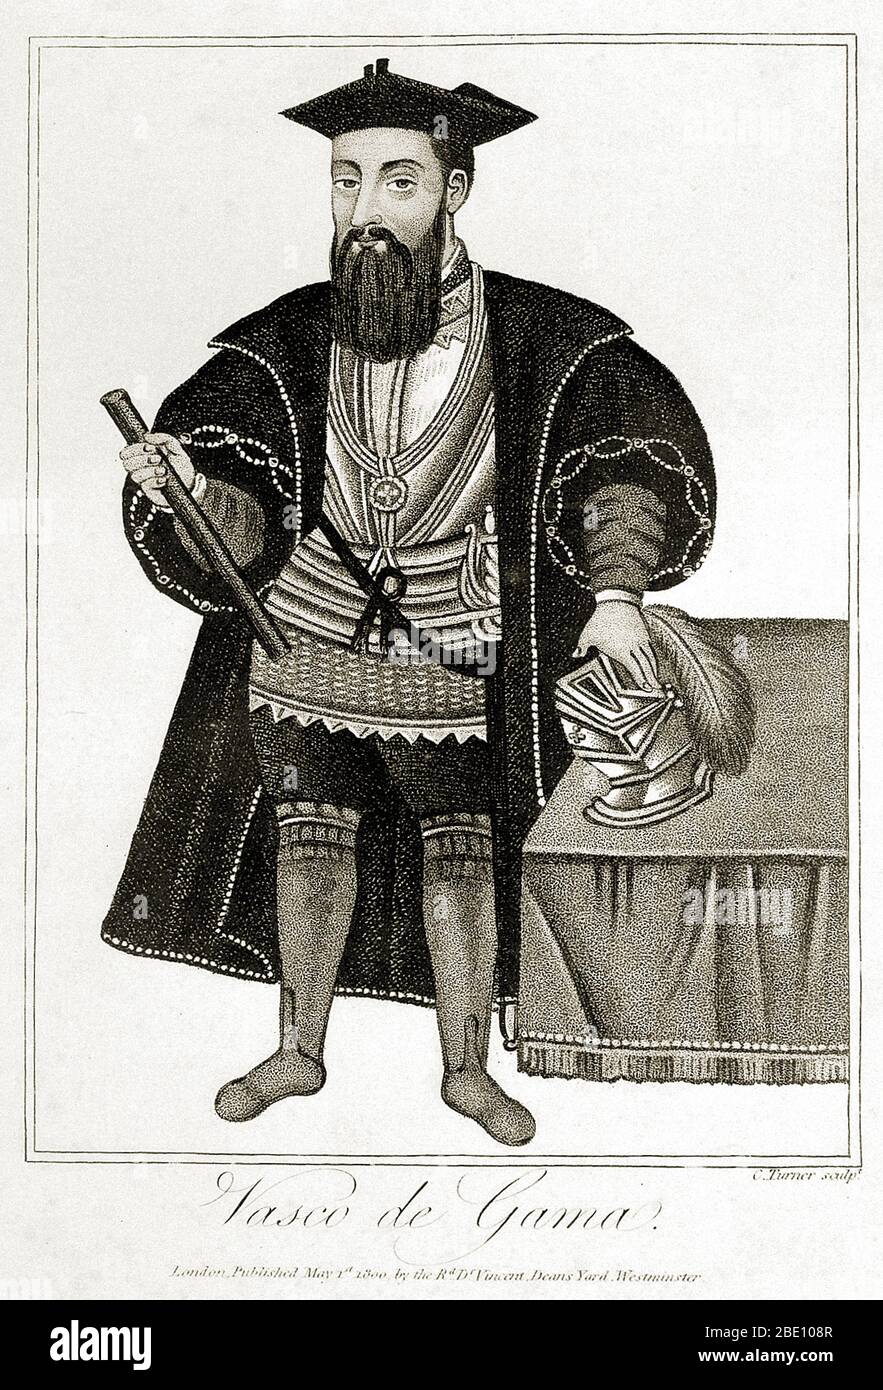 Vasco da Gama (1460 s - 24 décembre 1524) était un explorateur portugais et le premier européen à atteindre l'Inde par la mer. Son premier voyage en Inde (1497-99) fut le premier à relier l'Europe et l'Asie par une route maritime, reliant l'Atlantique et les océans indiens et donc l'Ouest et l'Orient. La découverte de la route maritime de da Gama en Inde a été significative et a ouvert la voie à une ère d'impérialisme mondial et à l'instauration d'un empire colonial durable en Asie par les Portugais. Son premier voyage en Inde est considéré comme une étape importante dans l'histoire mondiale. Banque D'Images